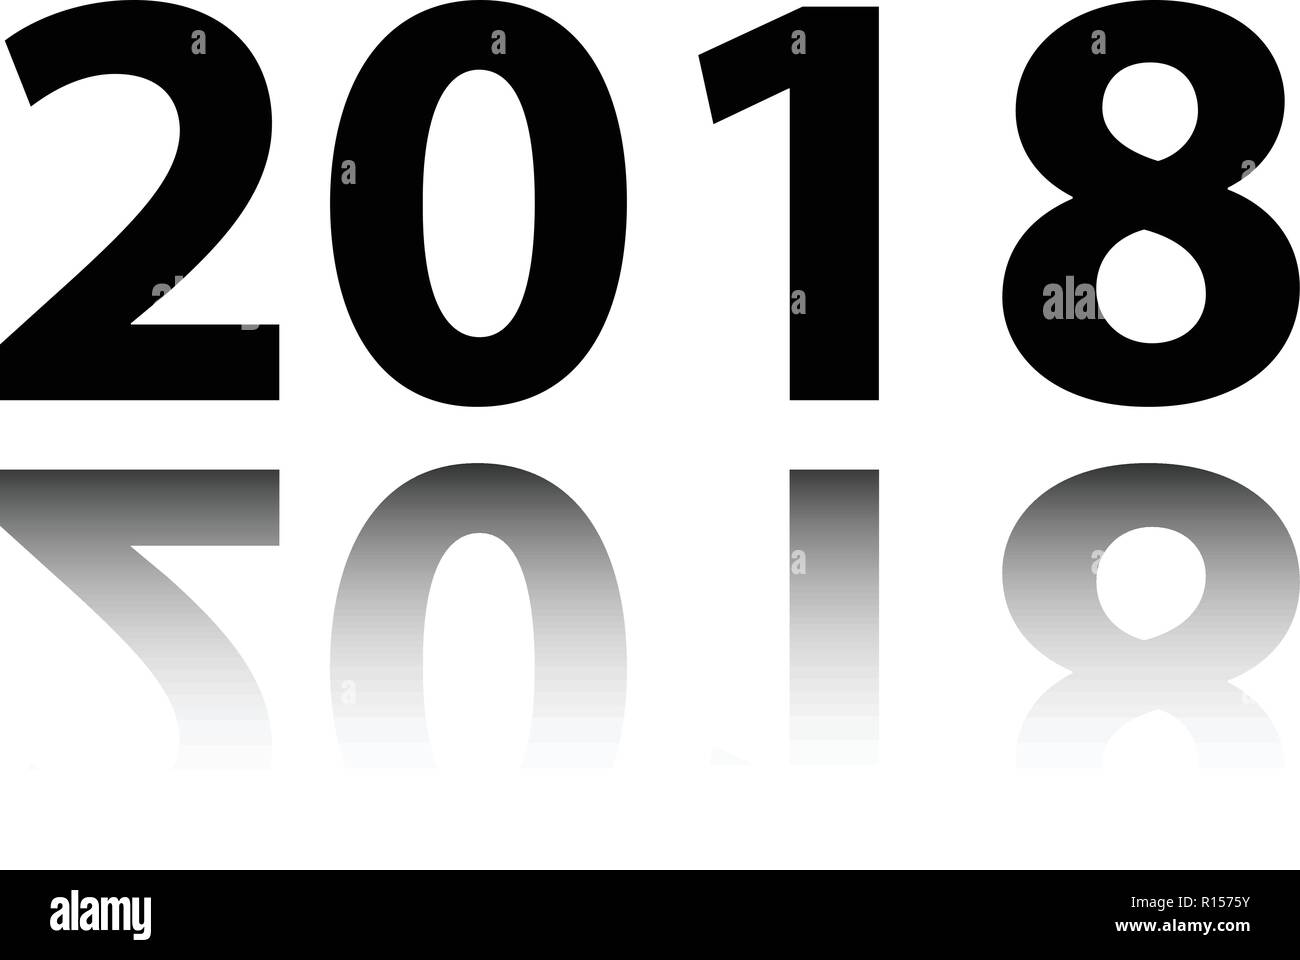 Felice anno nuovo 2018. Il testo nero con la riflessione su uno sfondo bianco illustrazione vettoriale Illustrazione Vettoriale